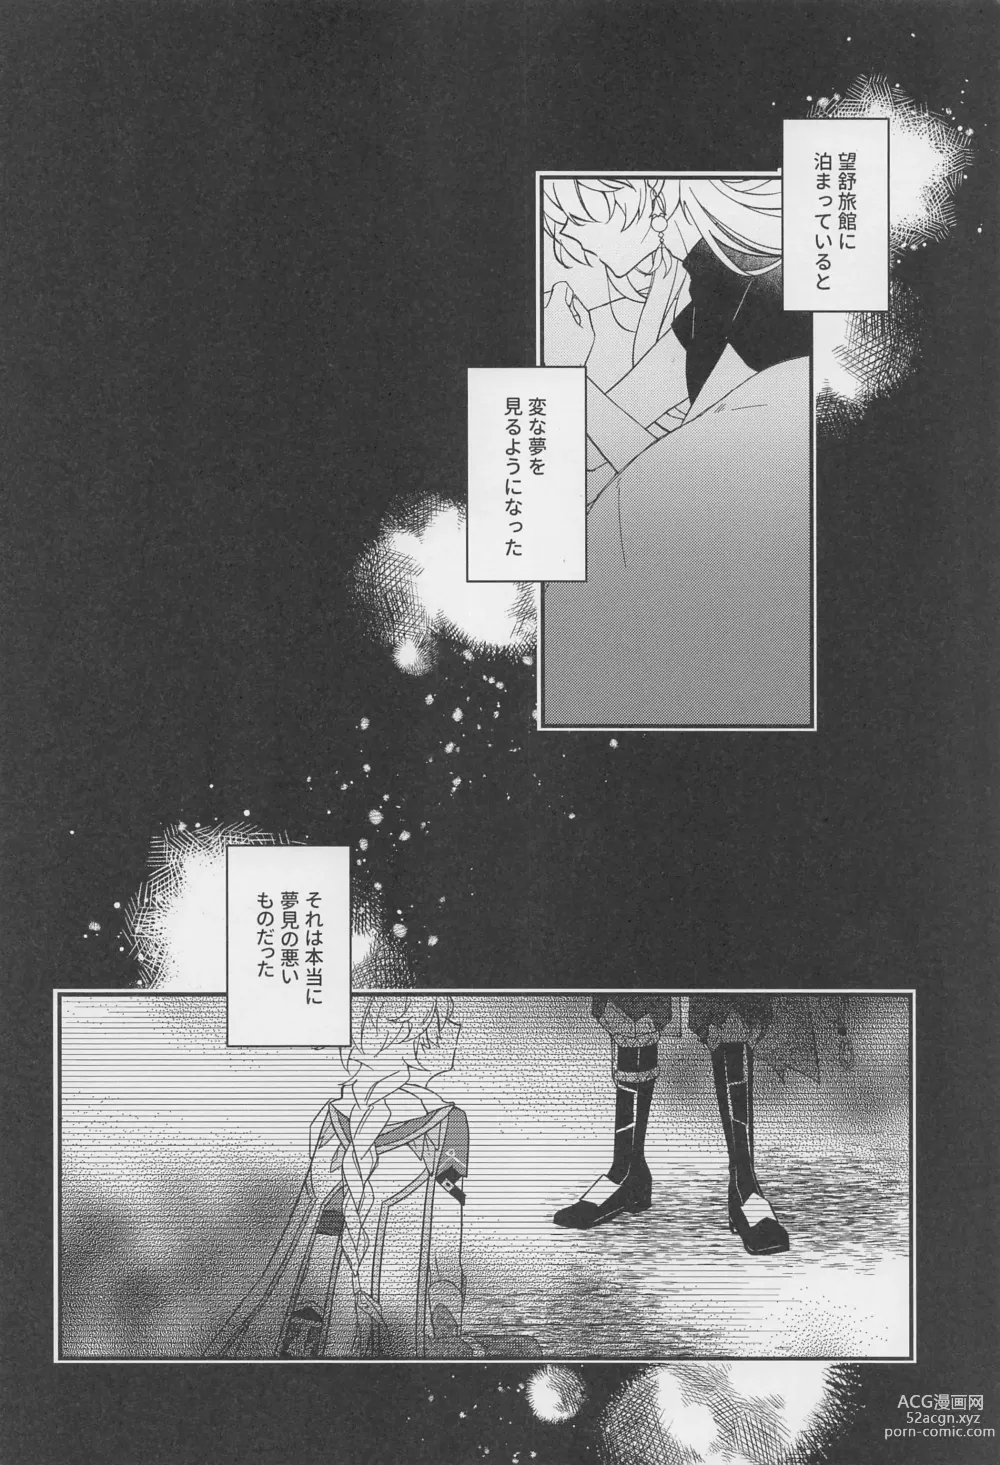 Page 3 of doujinshi Kimi o Wazurau